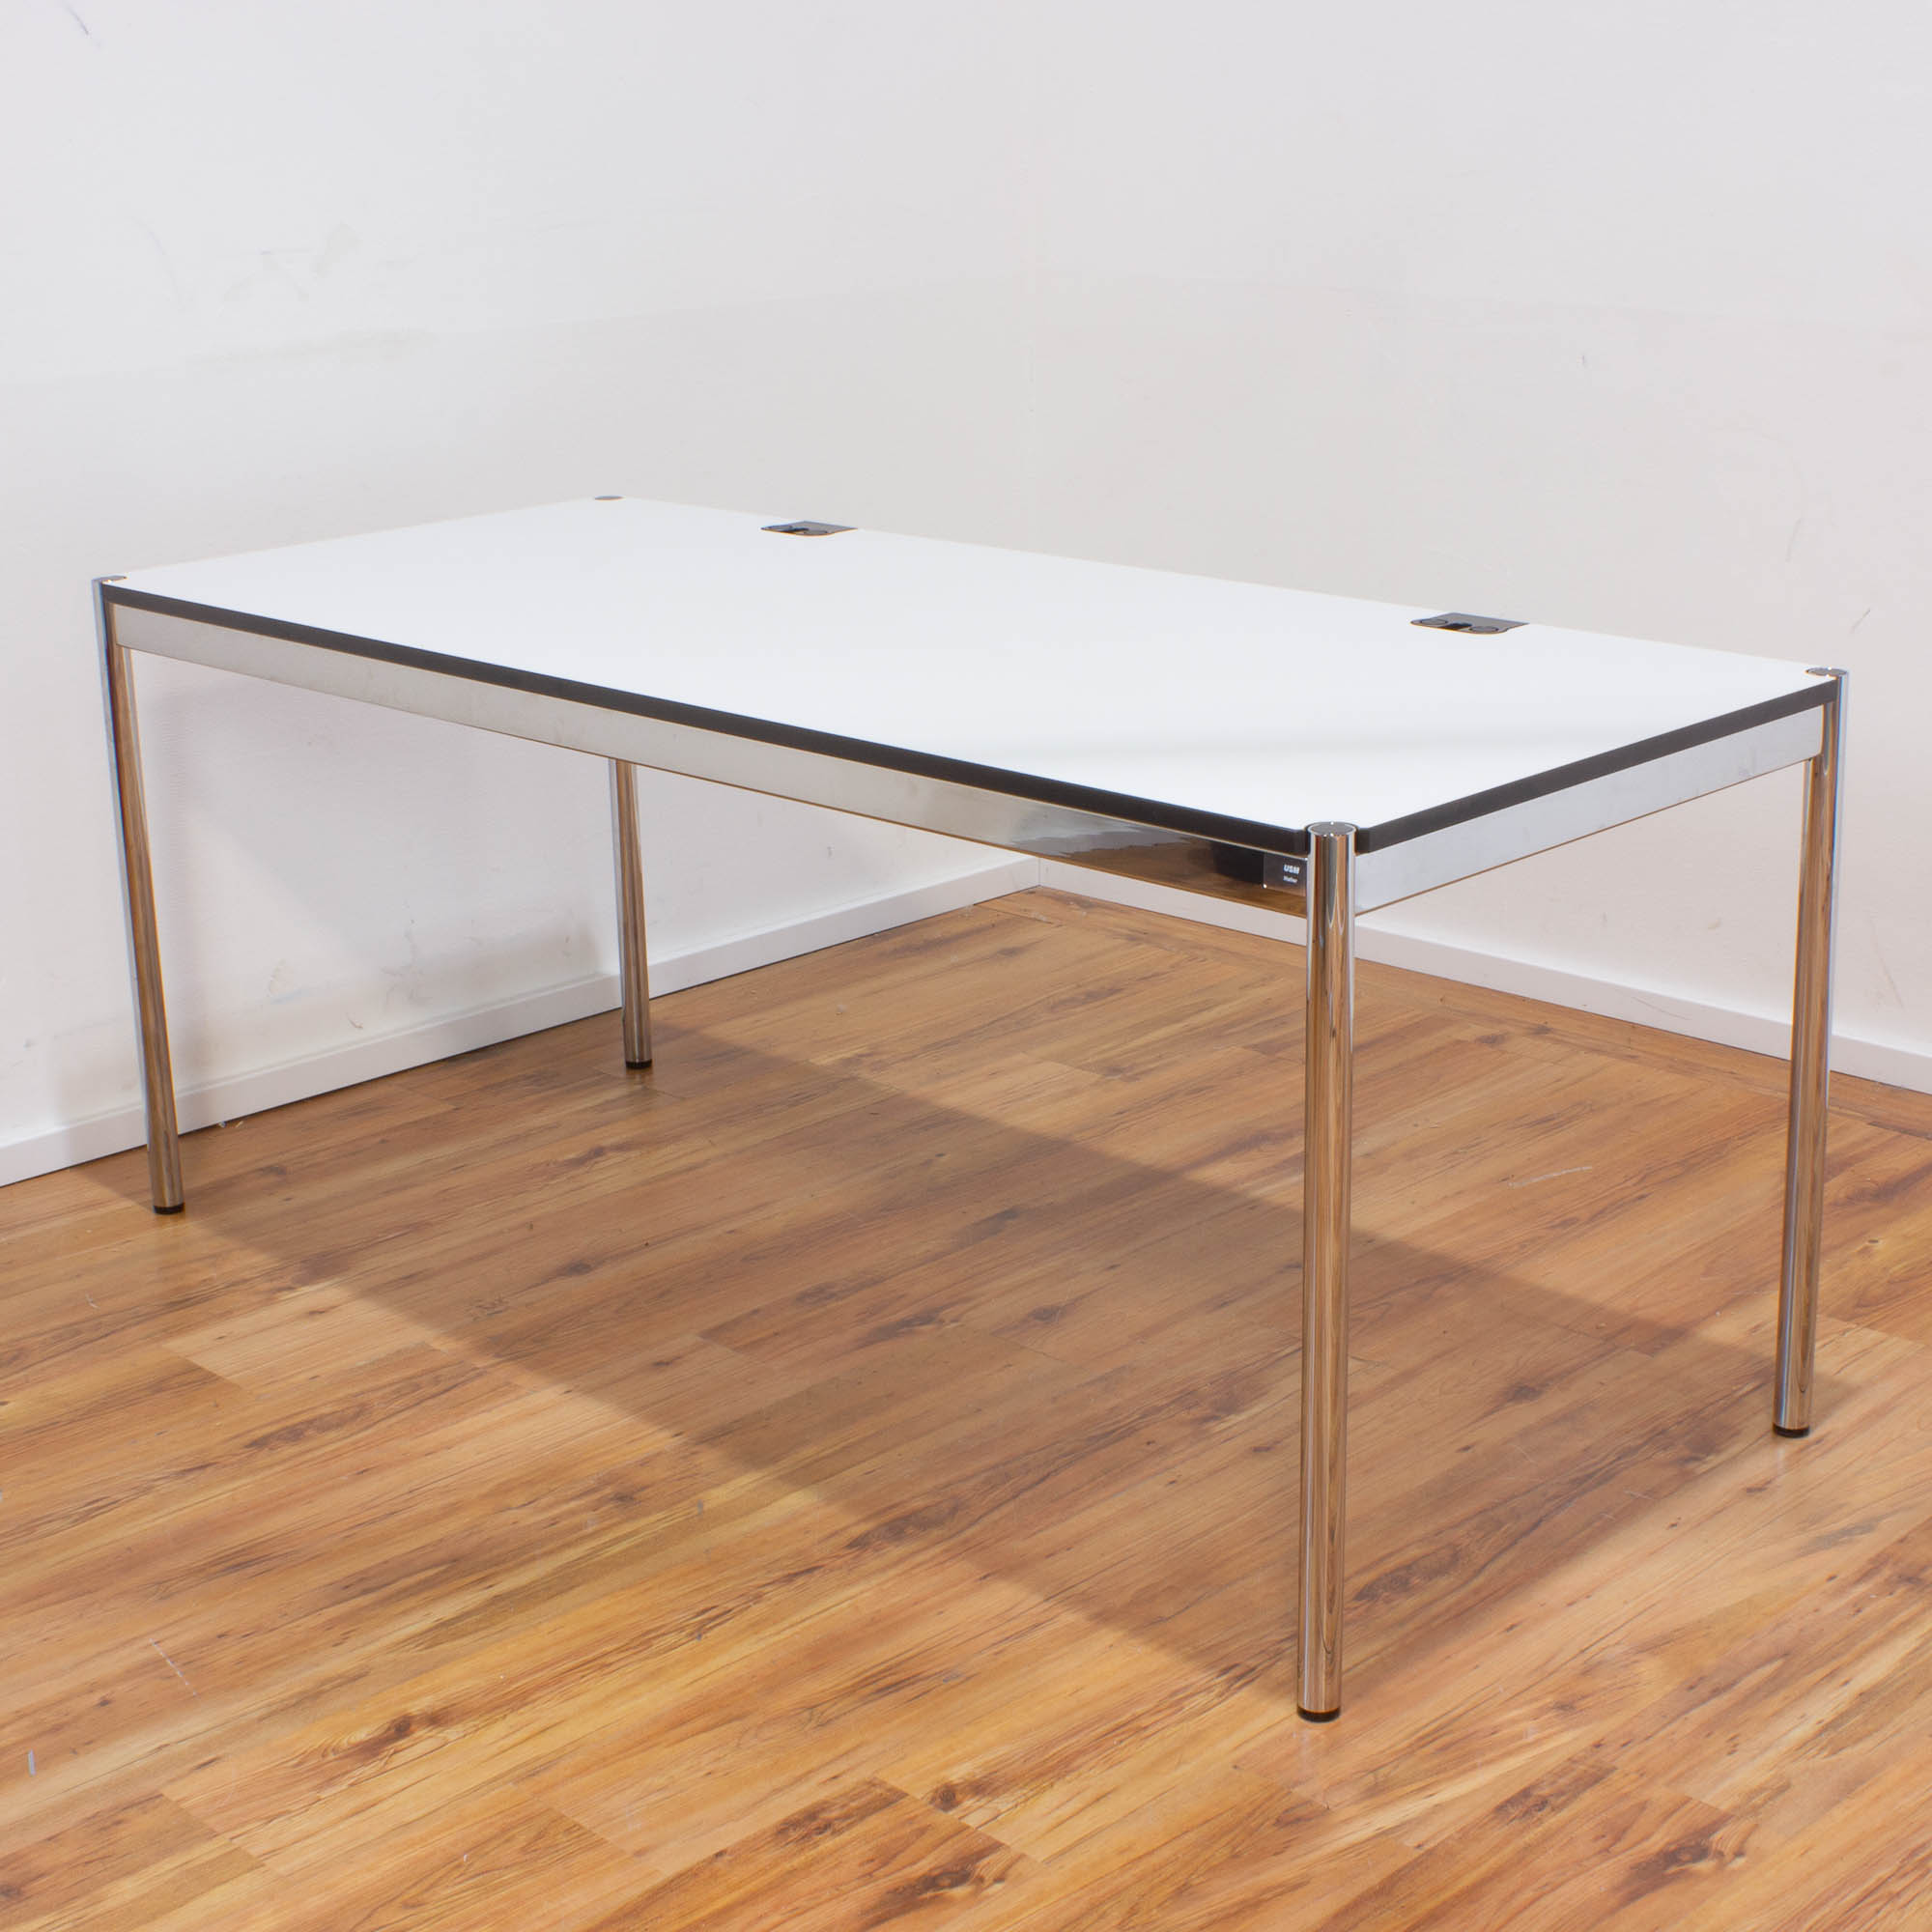 USM Haller Schreibtisch Plus 175 x 75 cm - Tischplatte weiß - Gestell 4-Fuß chrom